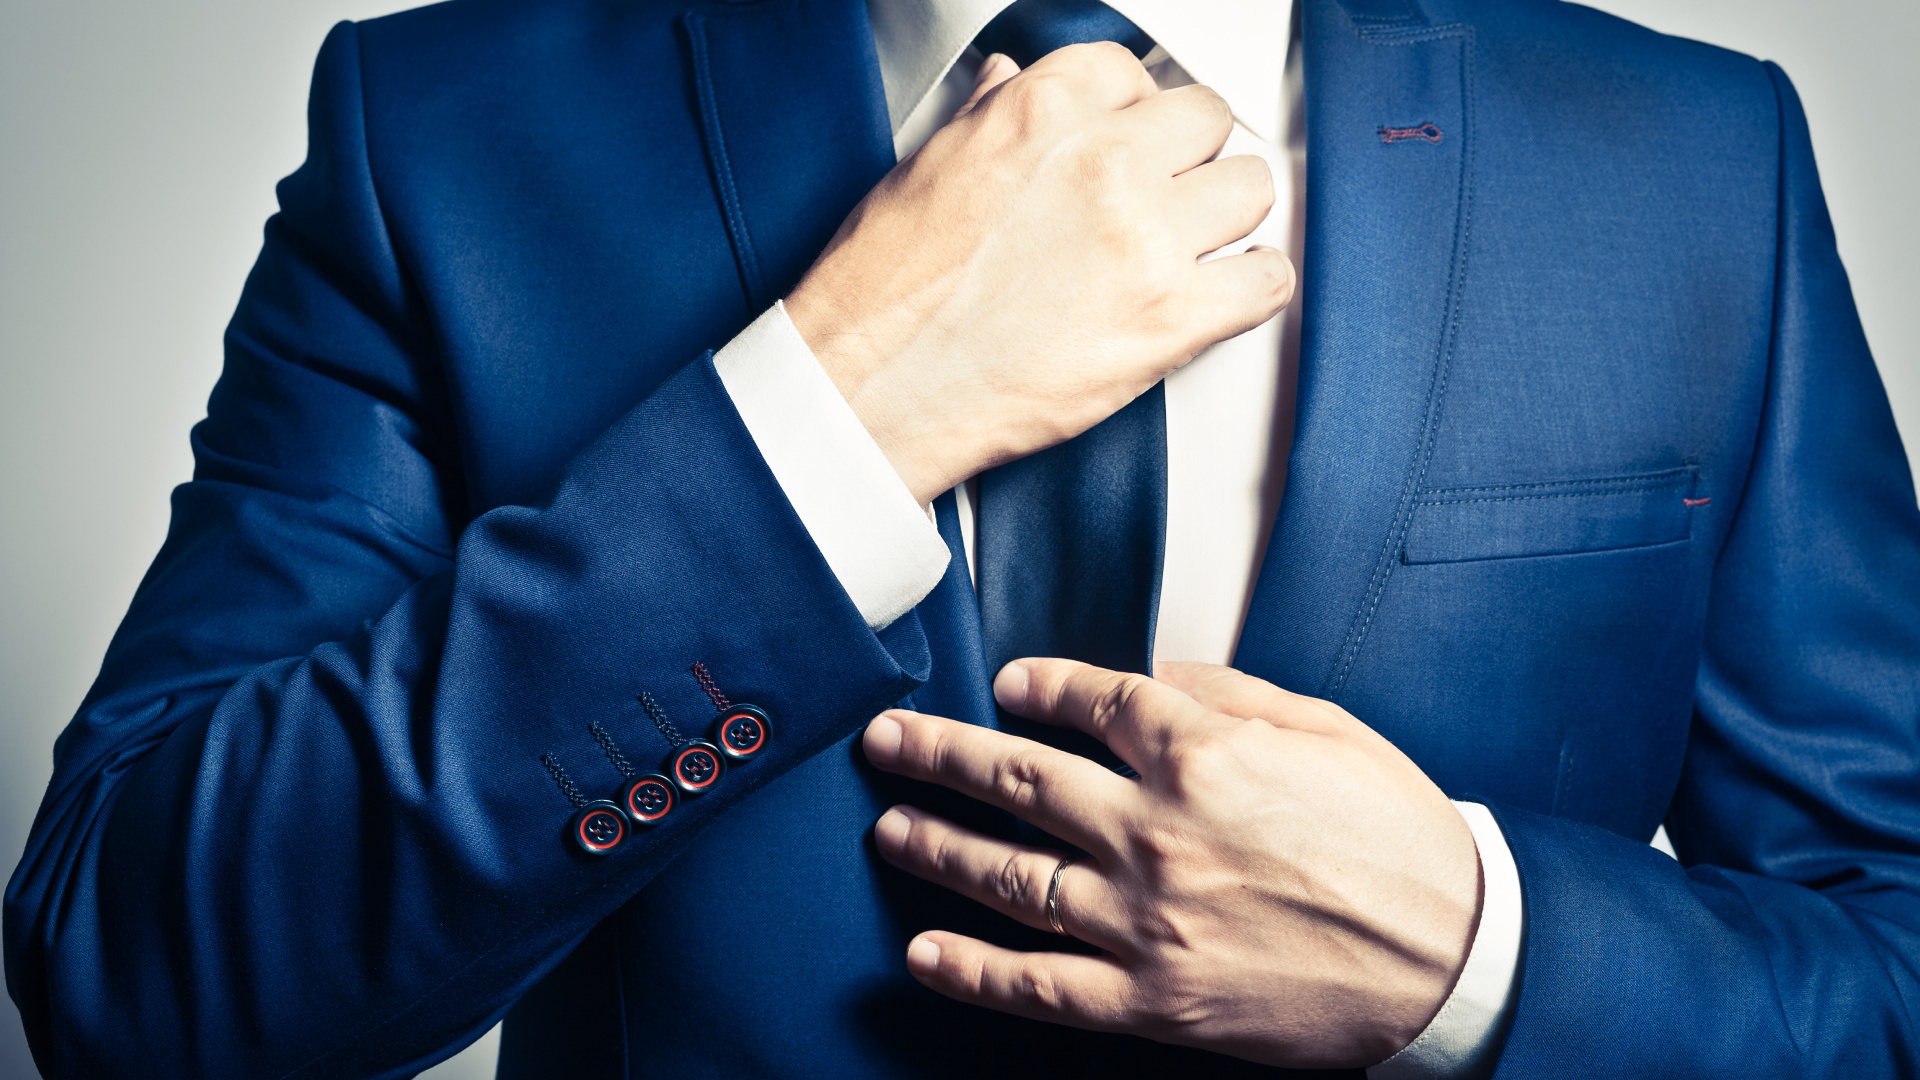 Necktie, Suit, Tuxedo, Blue, Formal Wear. Wallpaper in 1920x1080 Resolution